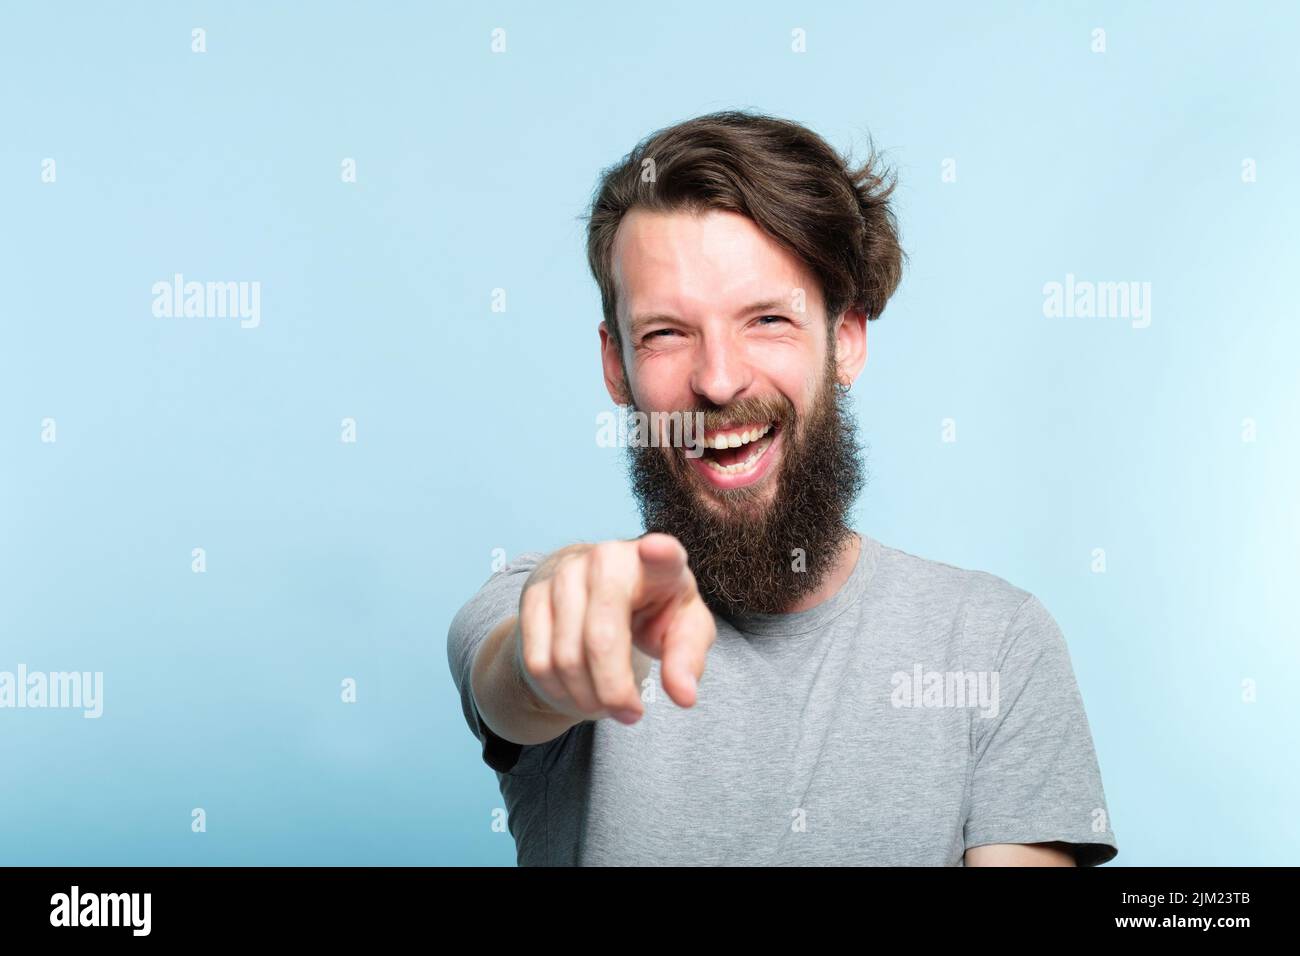 Spott lachend grinsend Mann zeigen Finger spöttisch Stockfoto